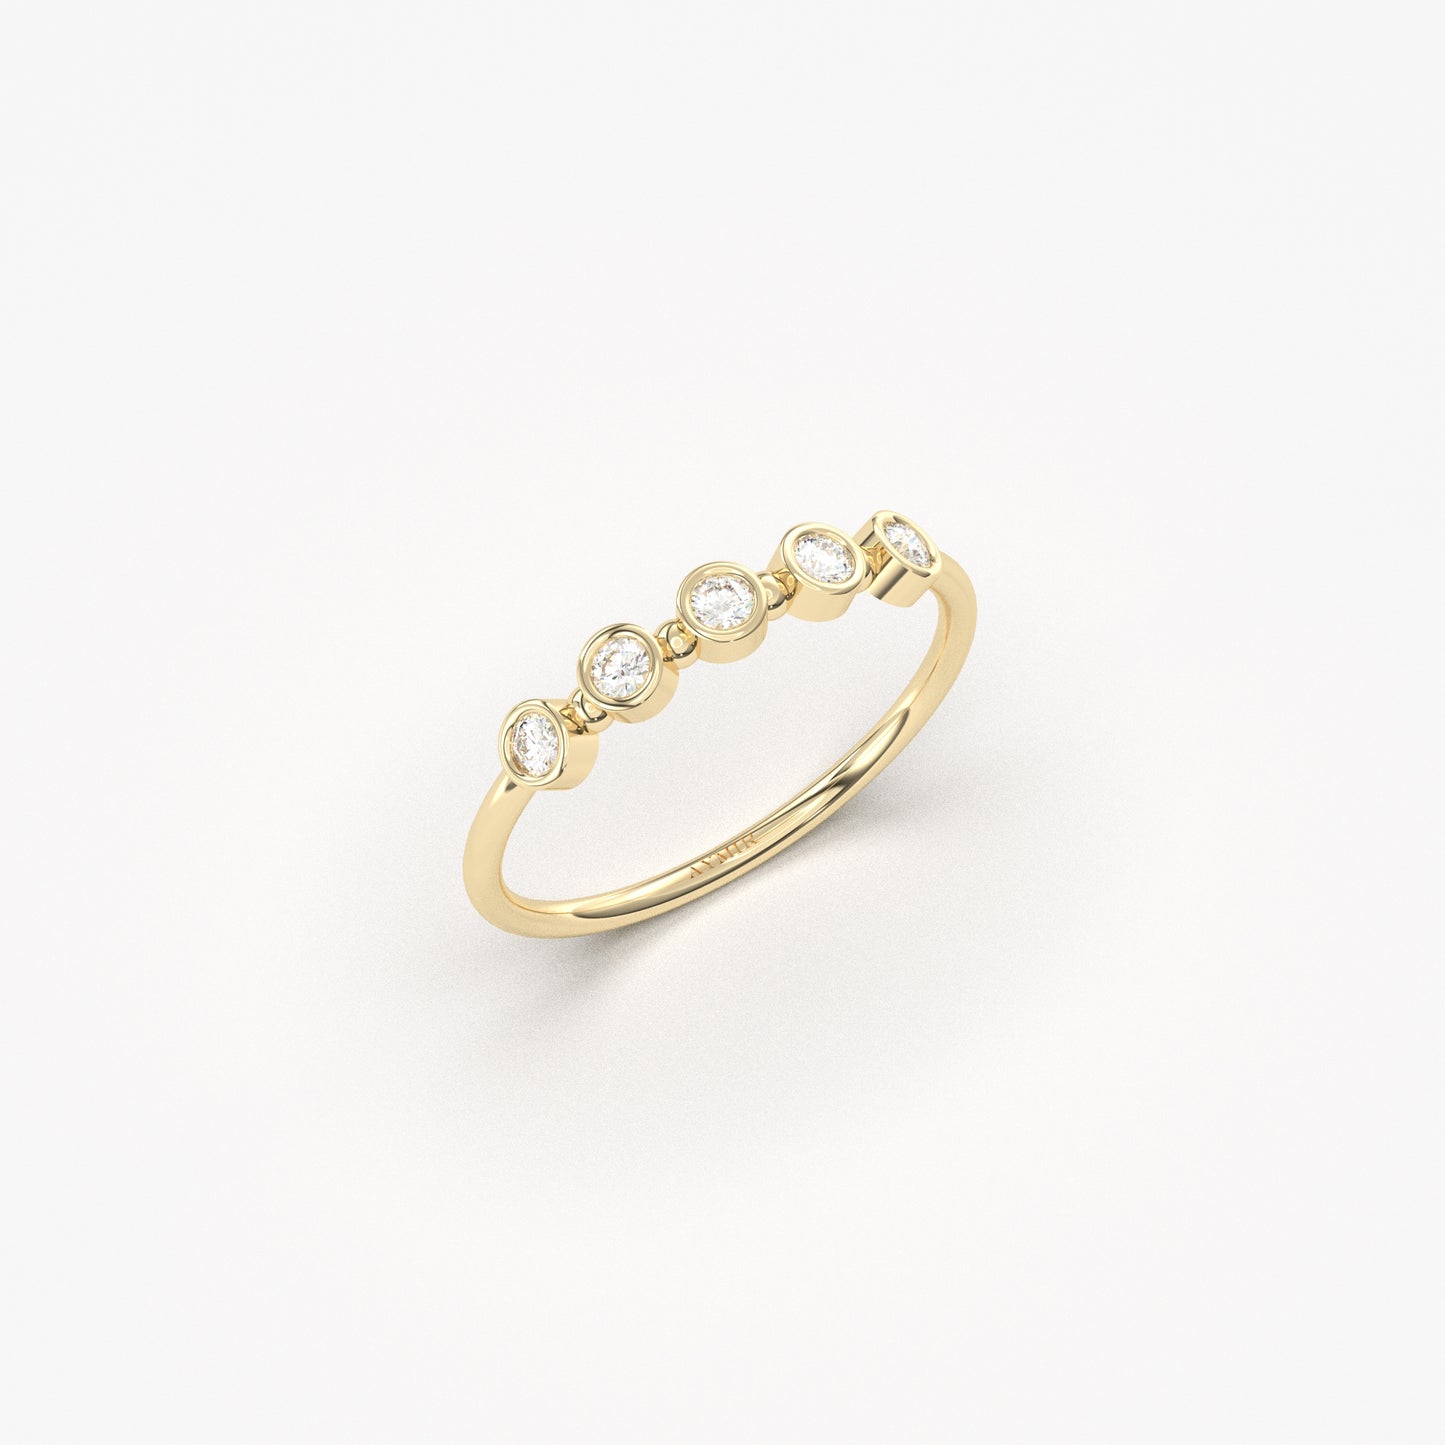 14K Gold Bezel Setting Diamond Ring - 2S197